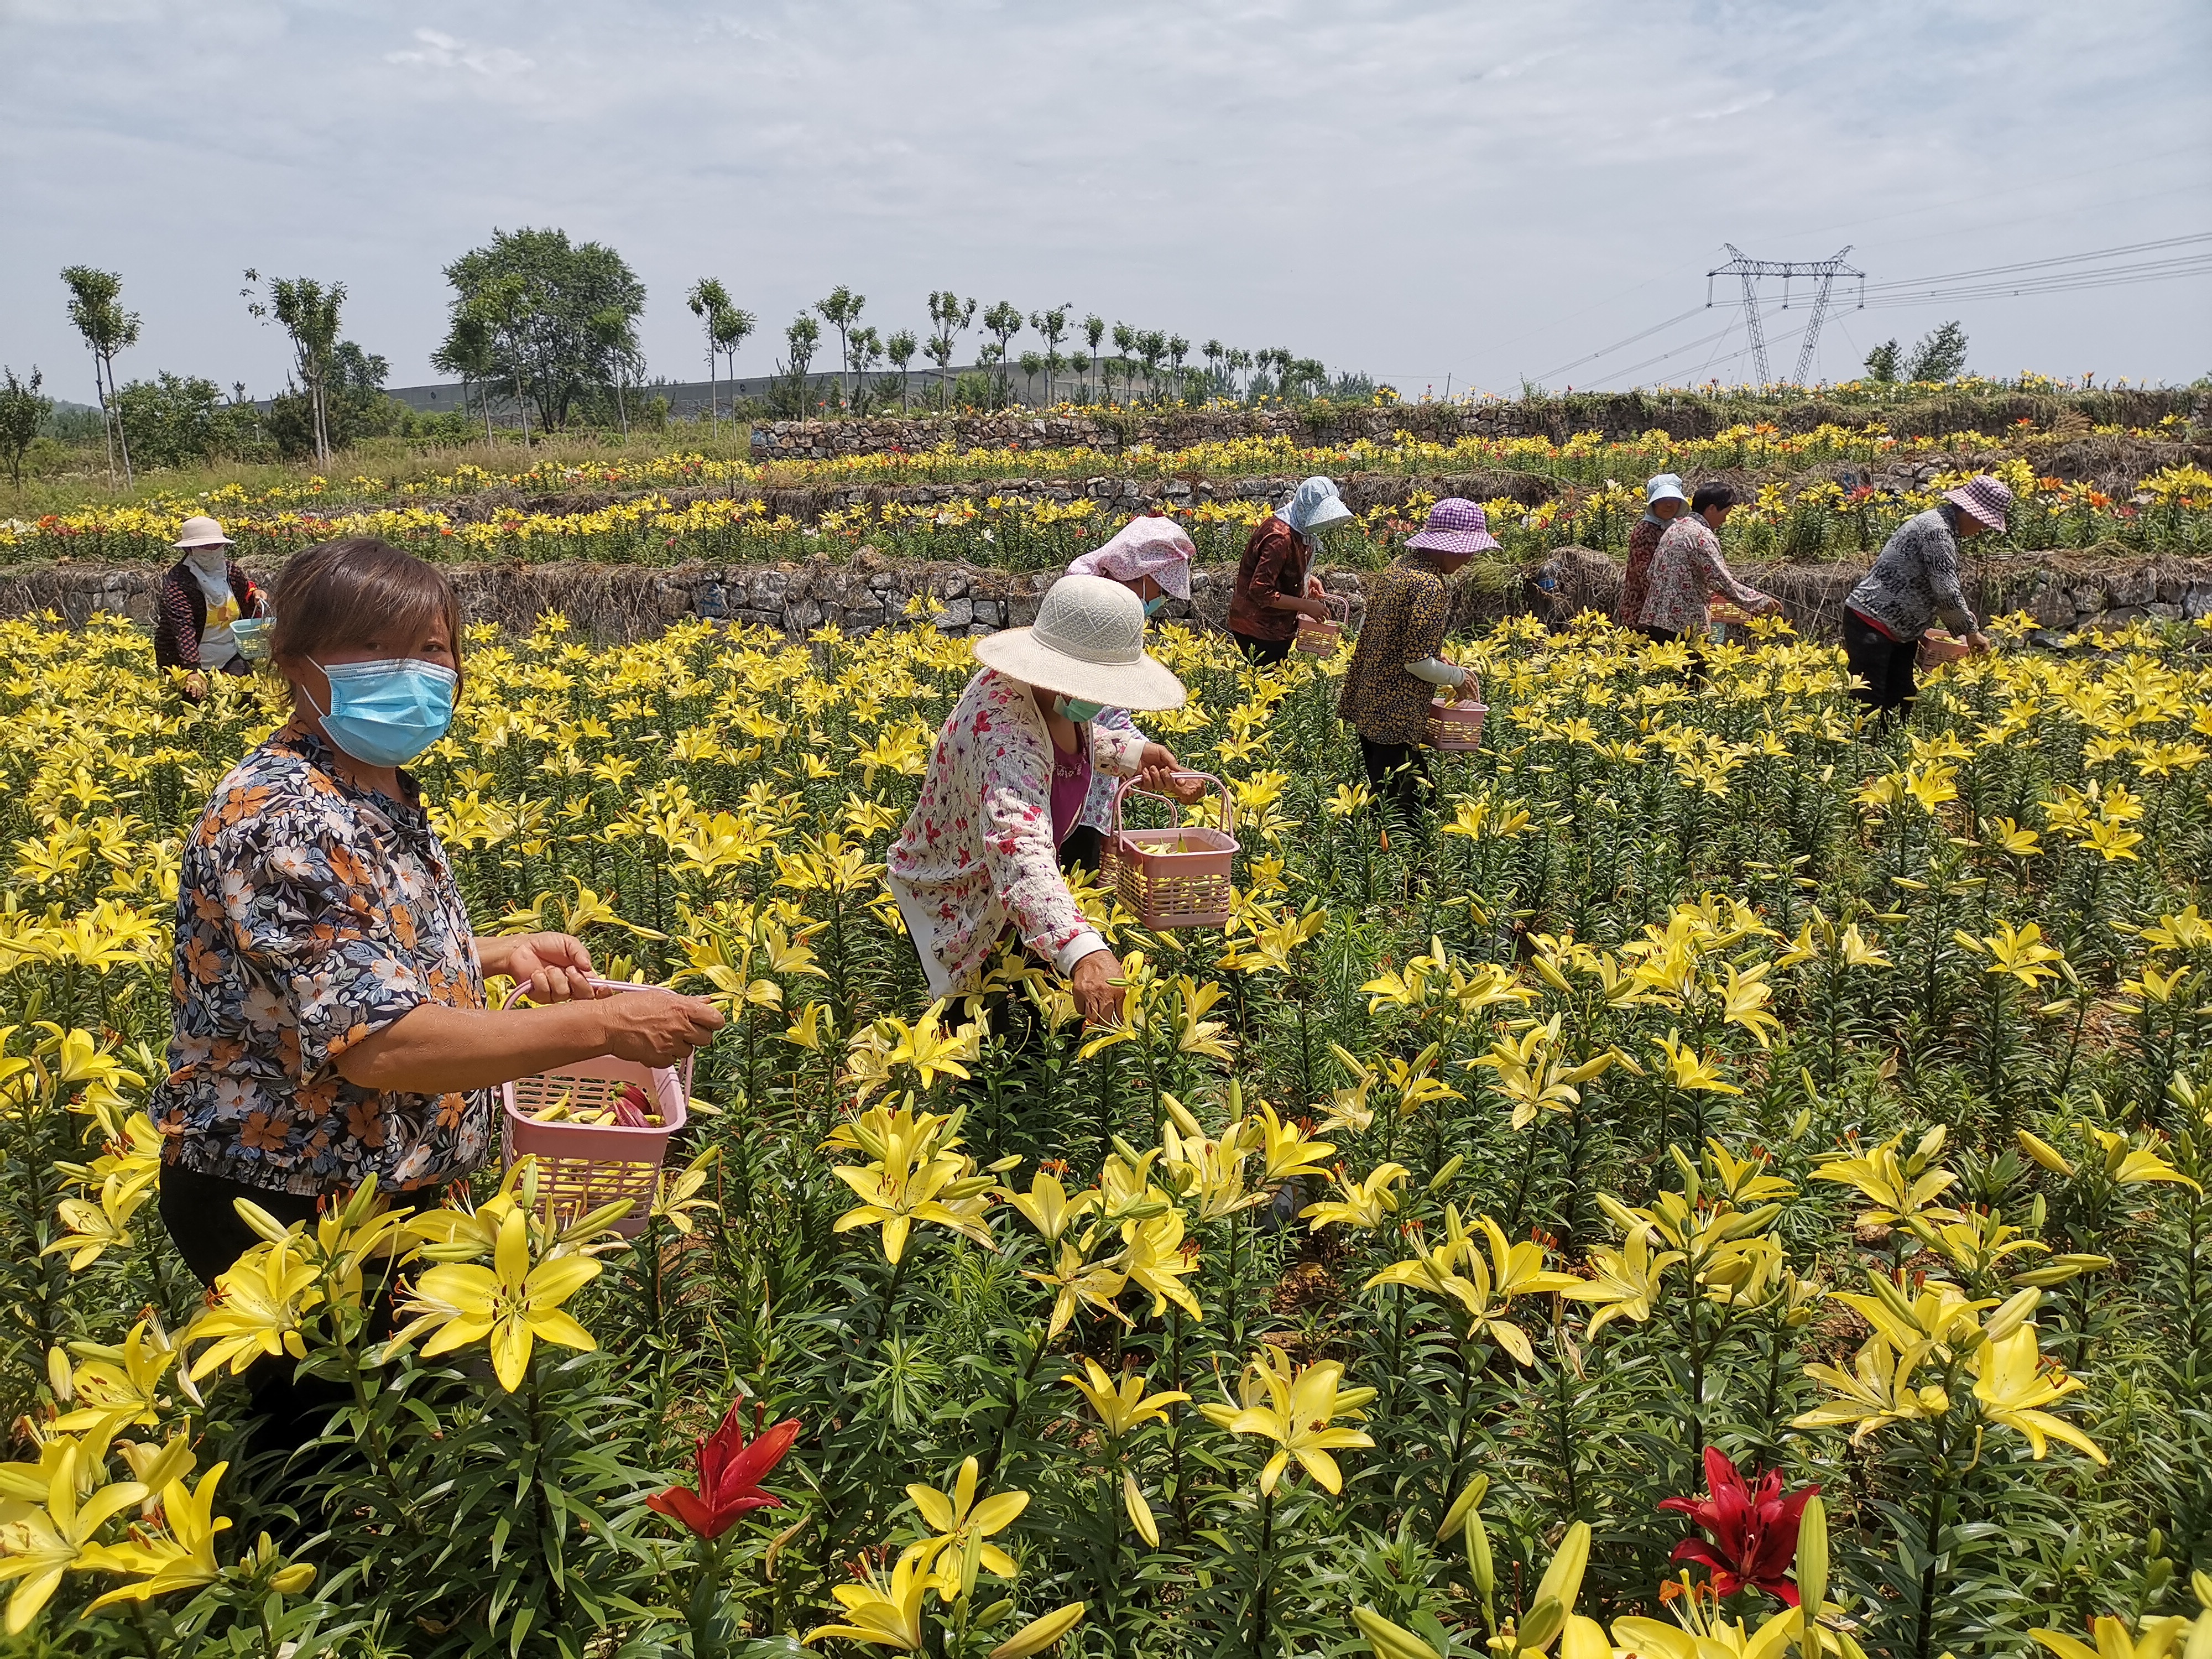 李秀波)6月18日,山东省新泰市羊流百合园内,村民正在采摘百合花